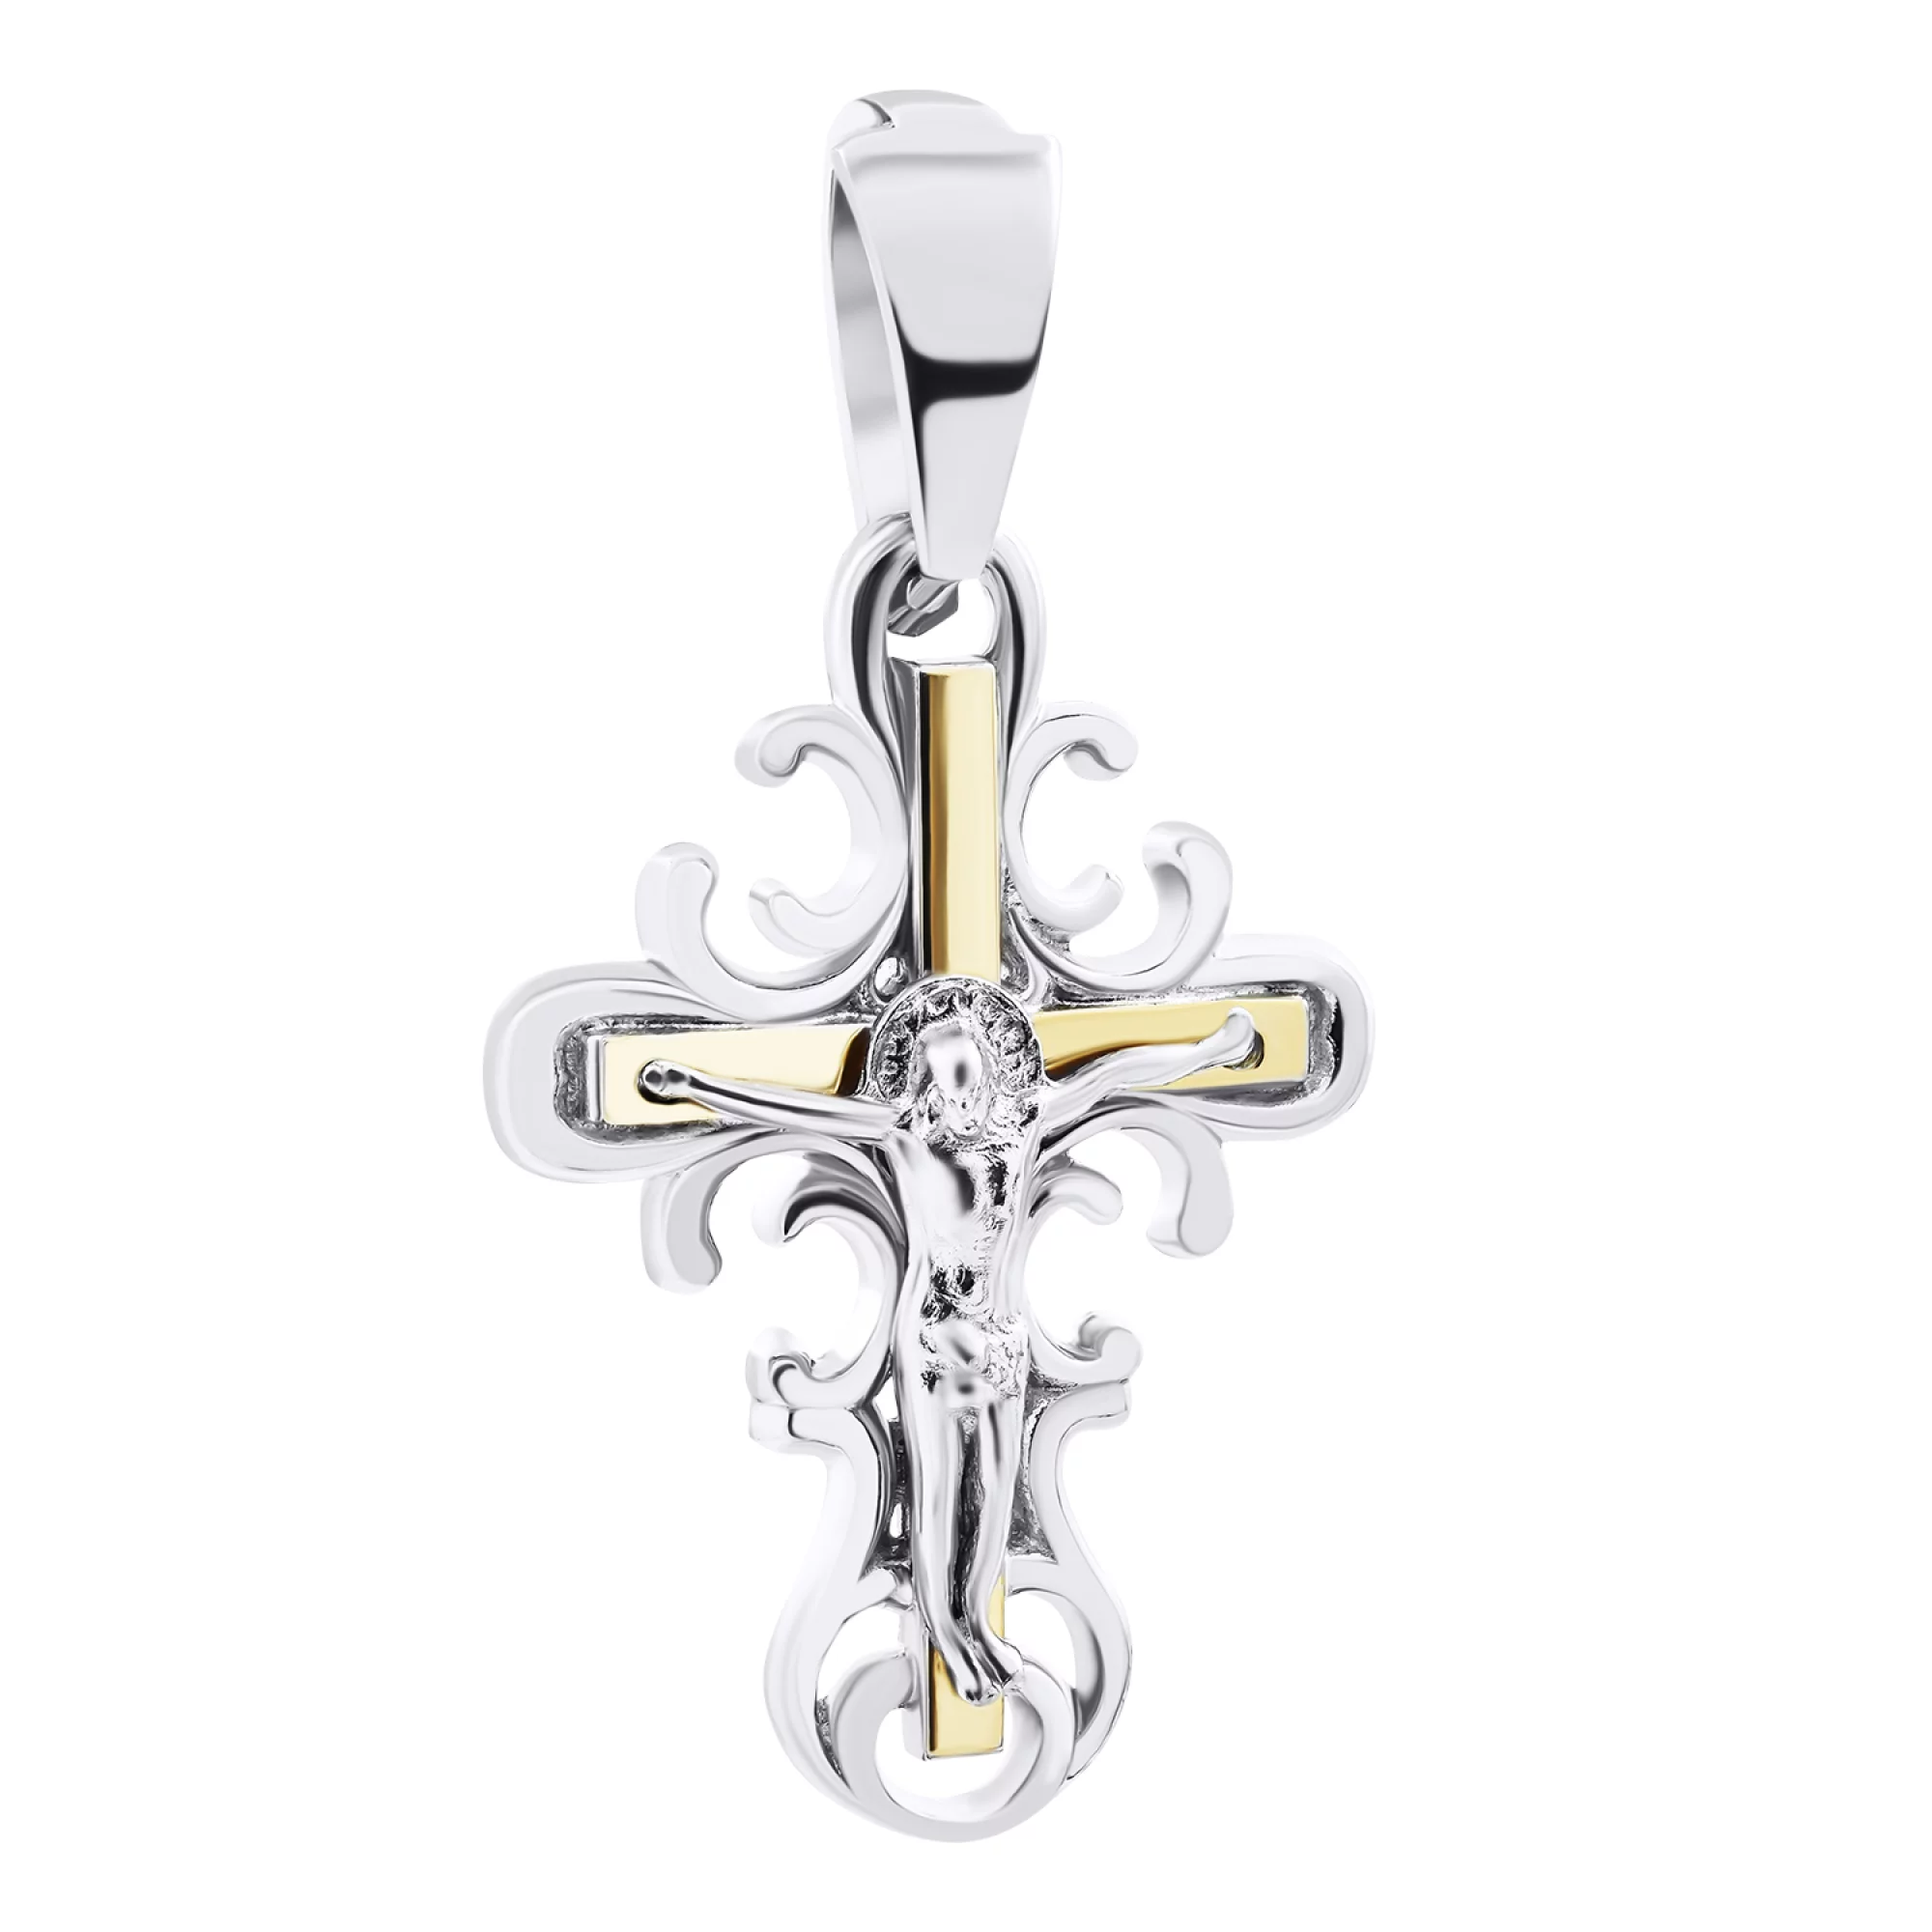 Хрестик зі срібла з позолотою і завитками - 1520350 – зображення 1